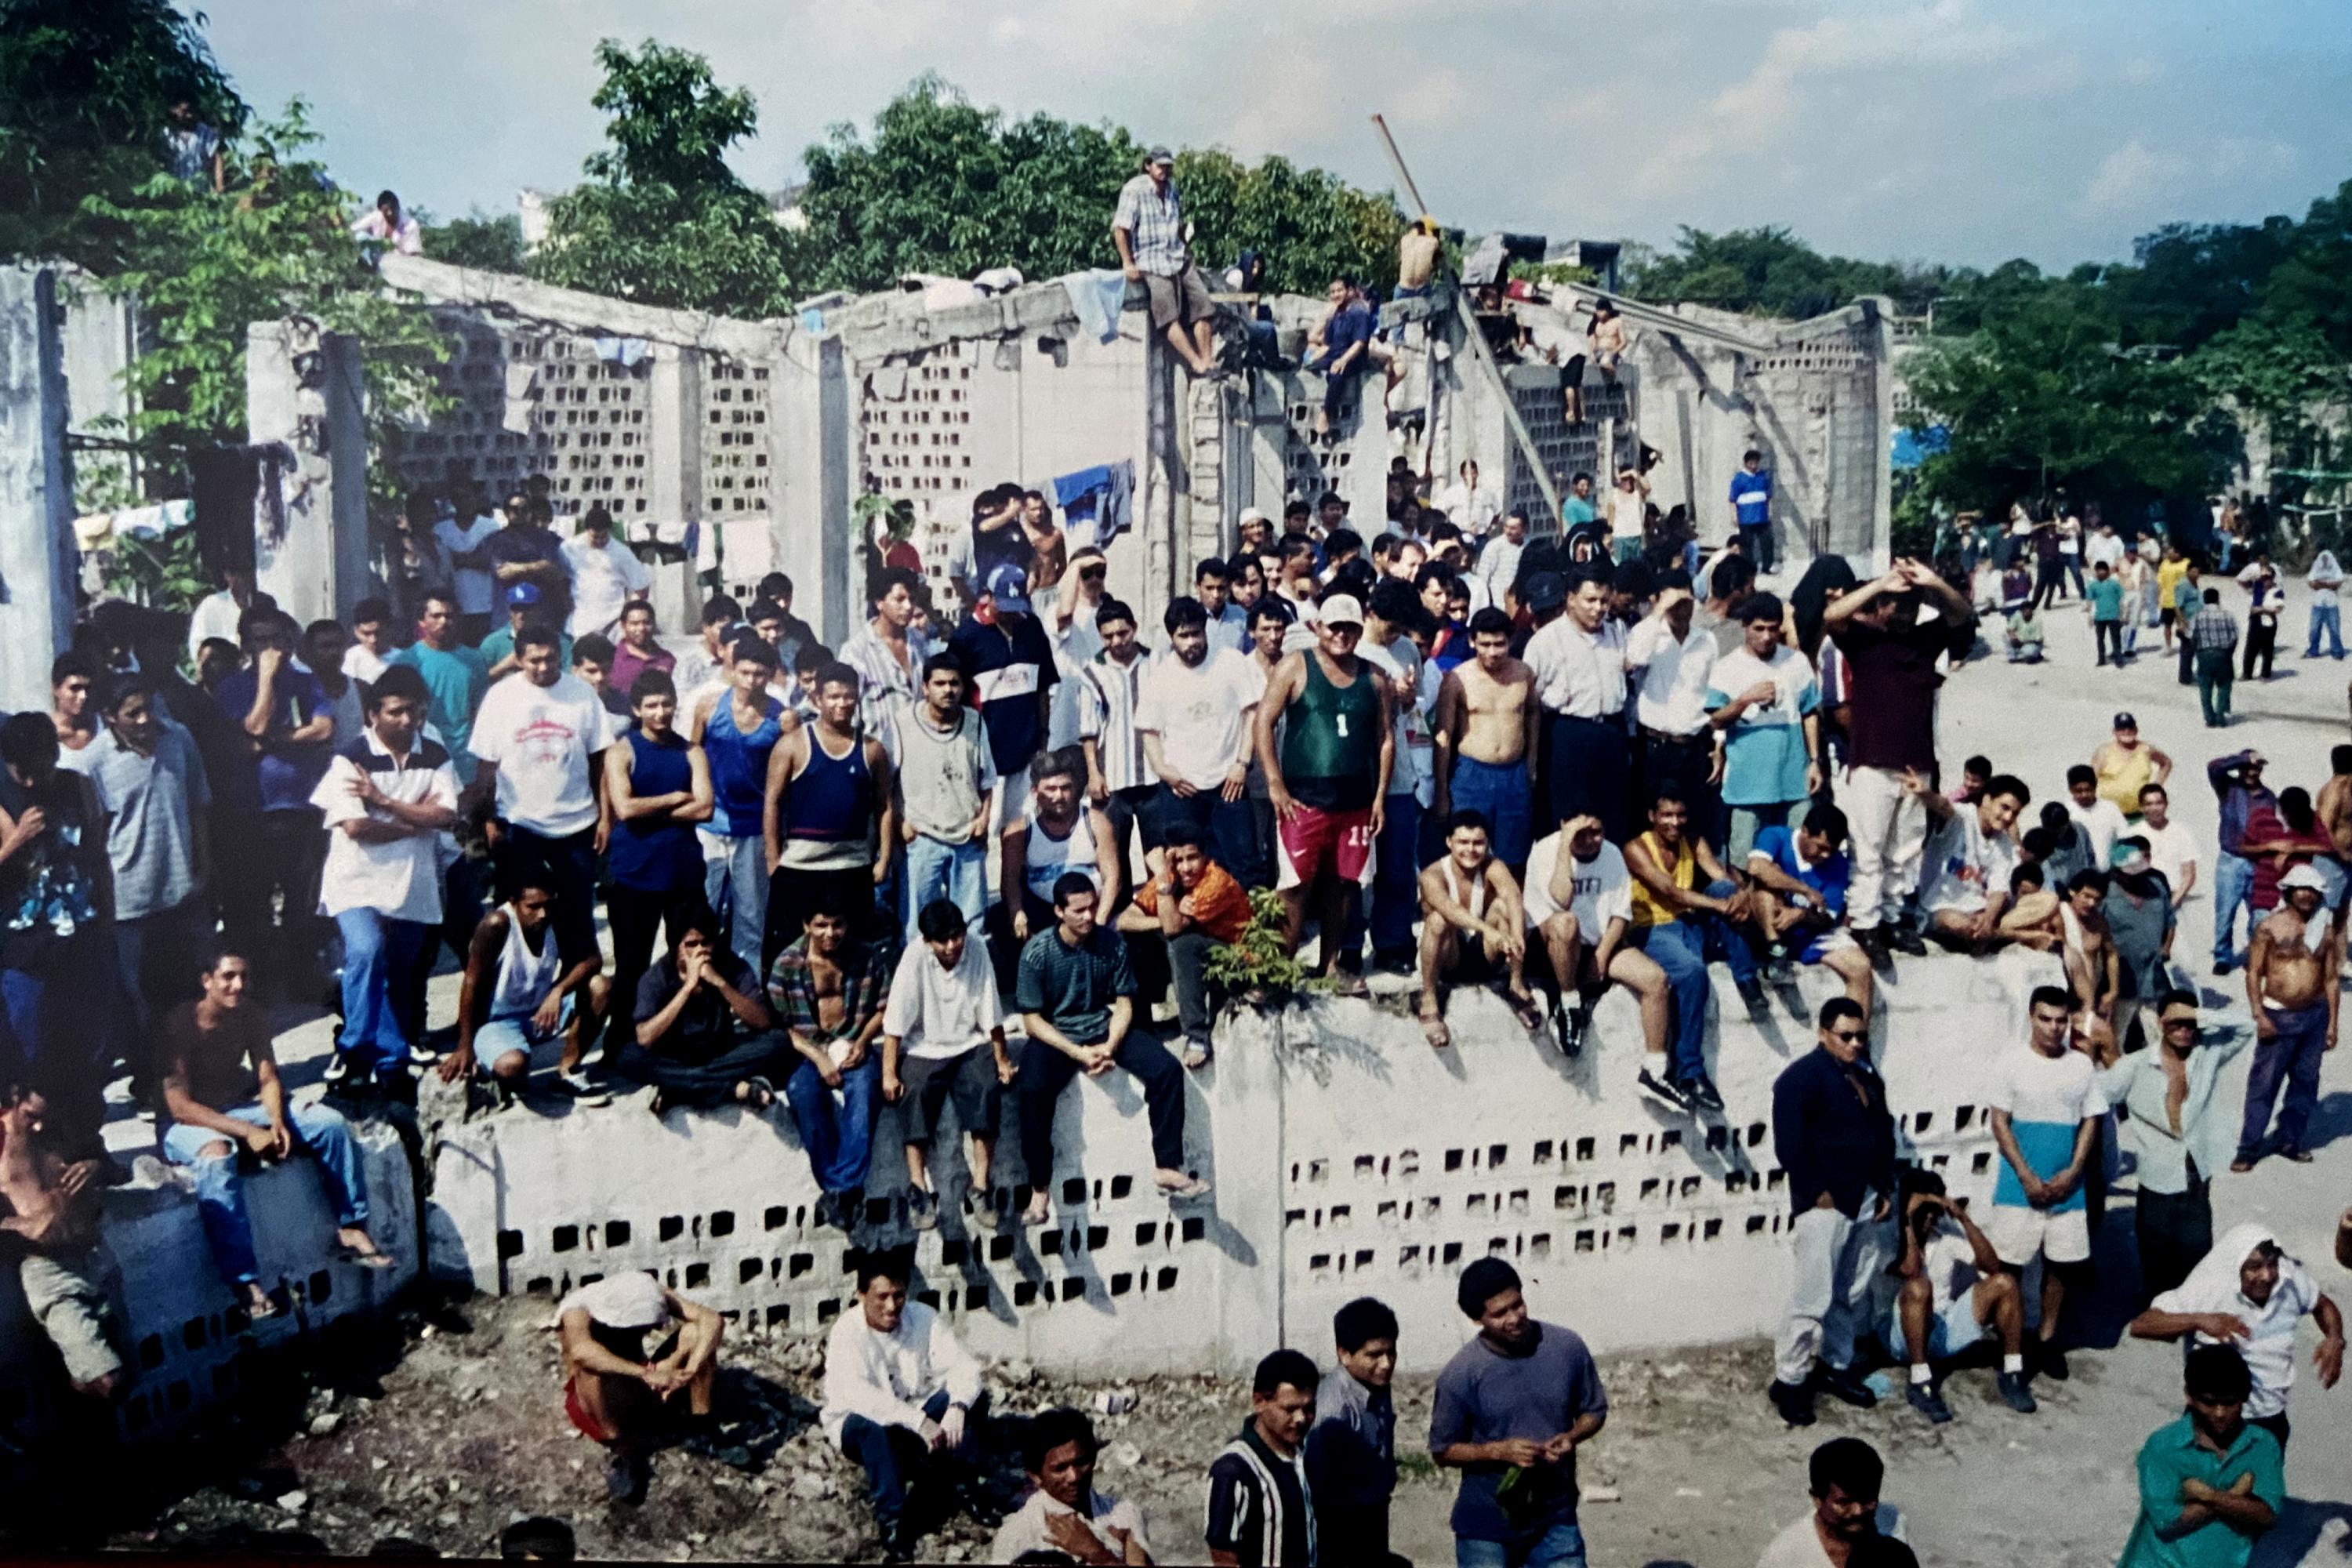 En los 90, Mariona era una prisión en ruinas, gobernada absolutamente por la organización criminal La Raza, liderada por El Brother. Esta fotografía fue tomada durante una reunión general de internos a finales de los 90.